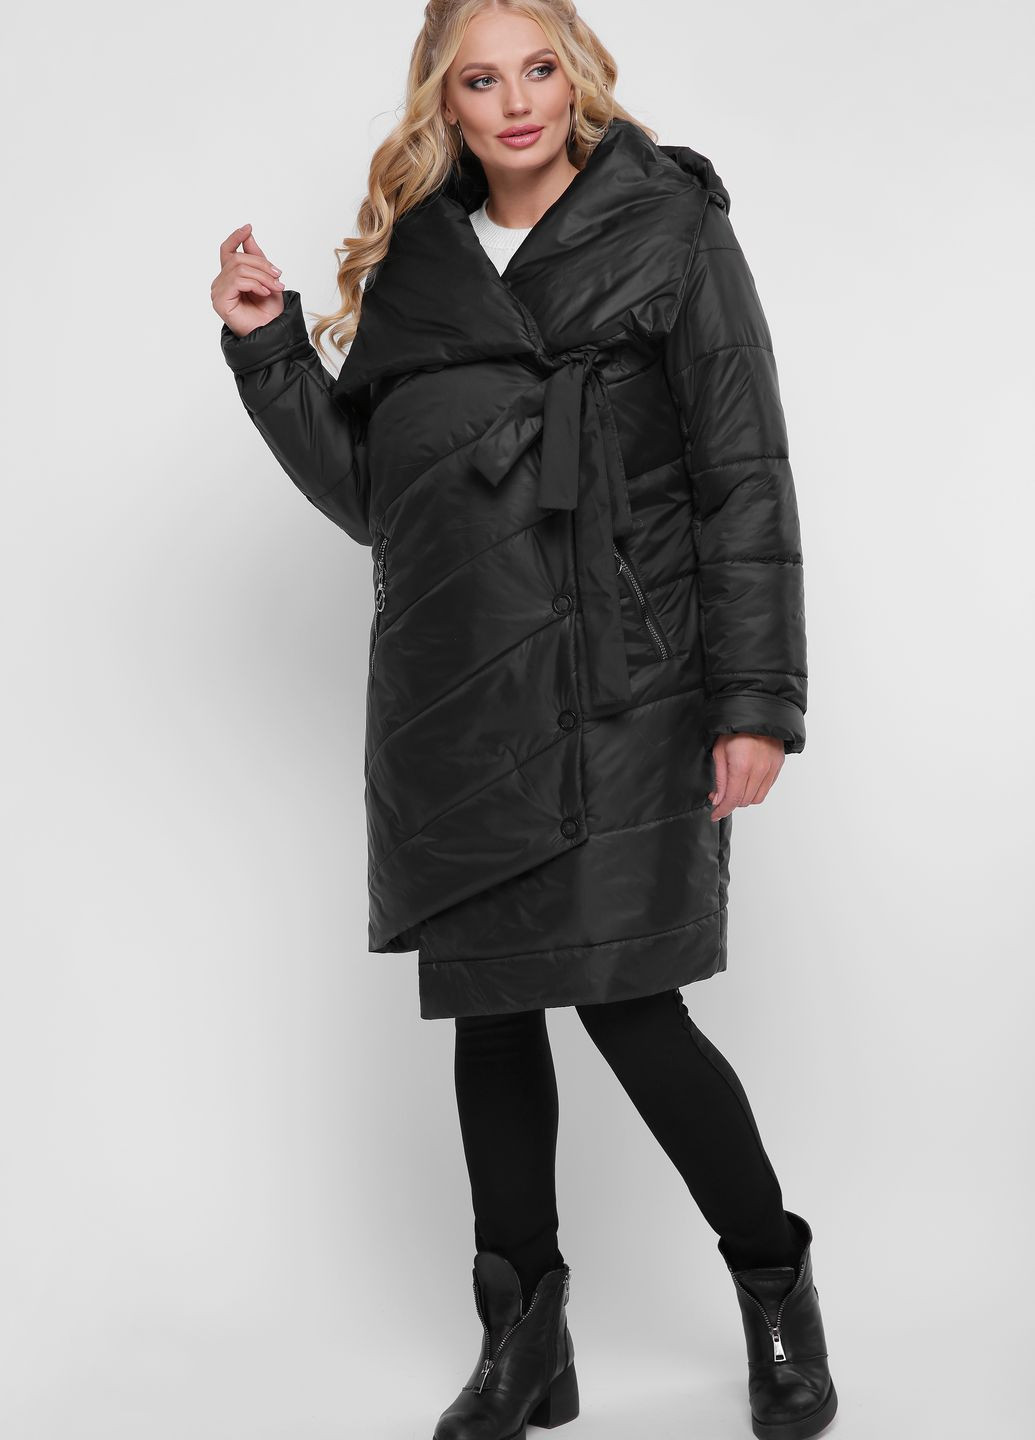 Черная зимняя удлиненная куртка Welltre